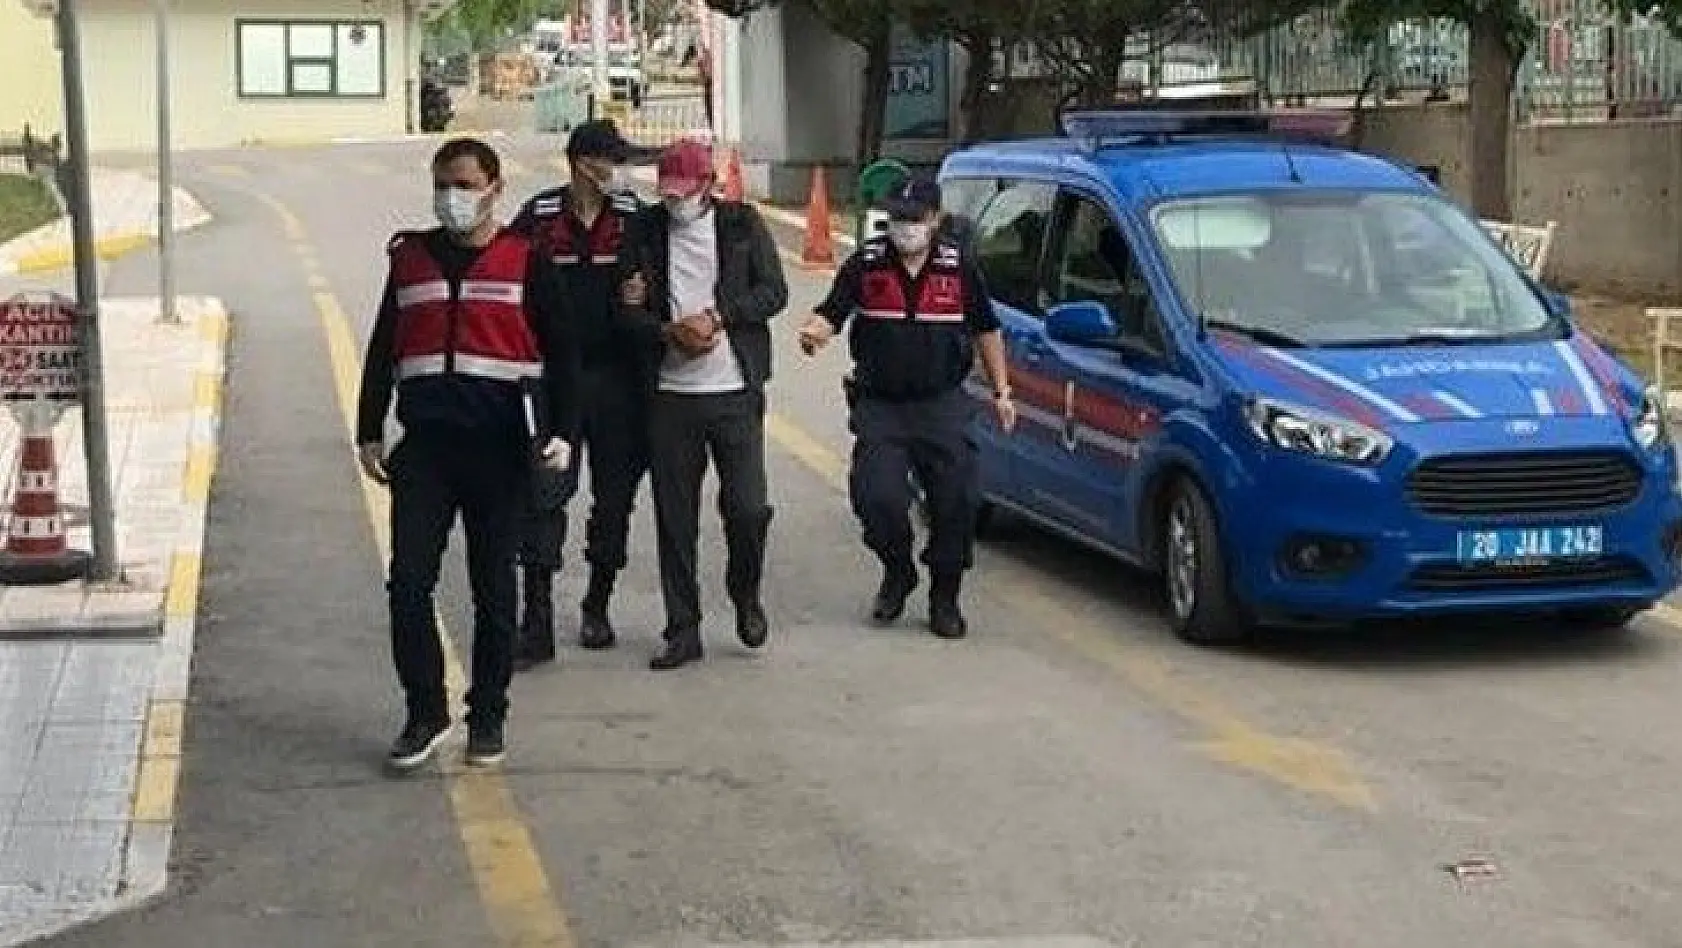 Elazığ'dan gelen 3 mimarı kağıt parçaları ile 200 bin TL dolandıran çete üyeleri tutuklandı